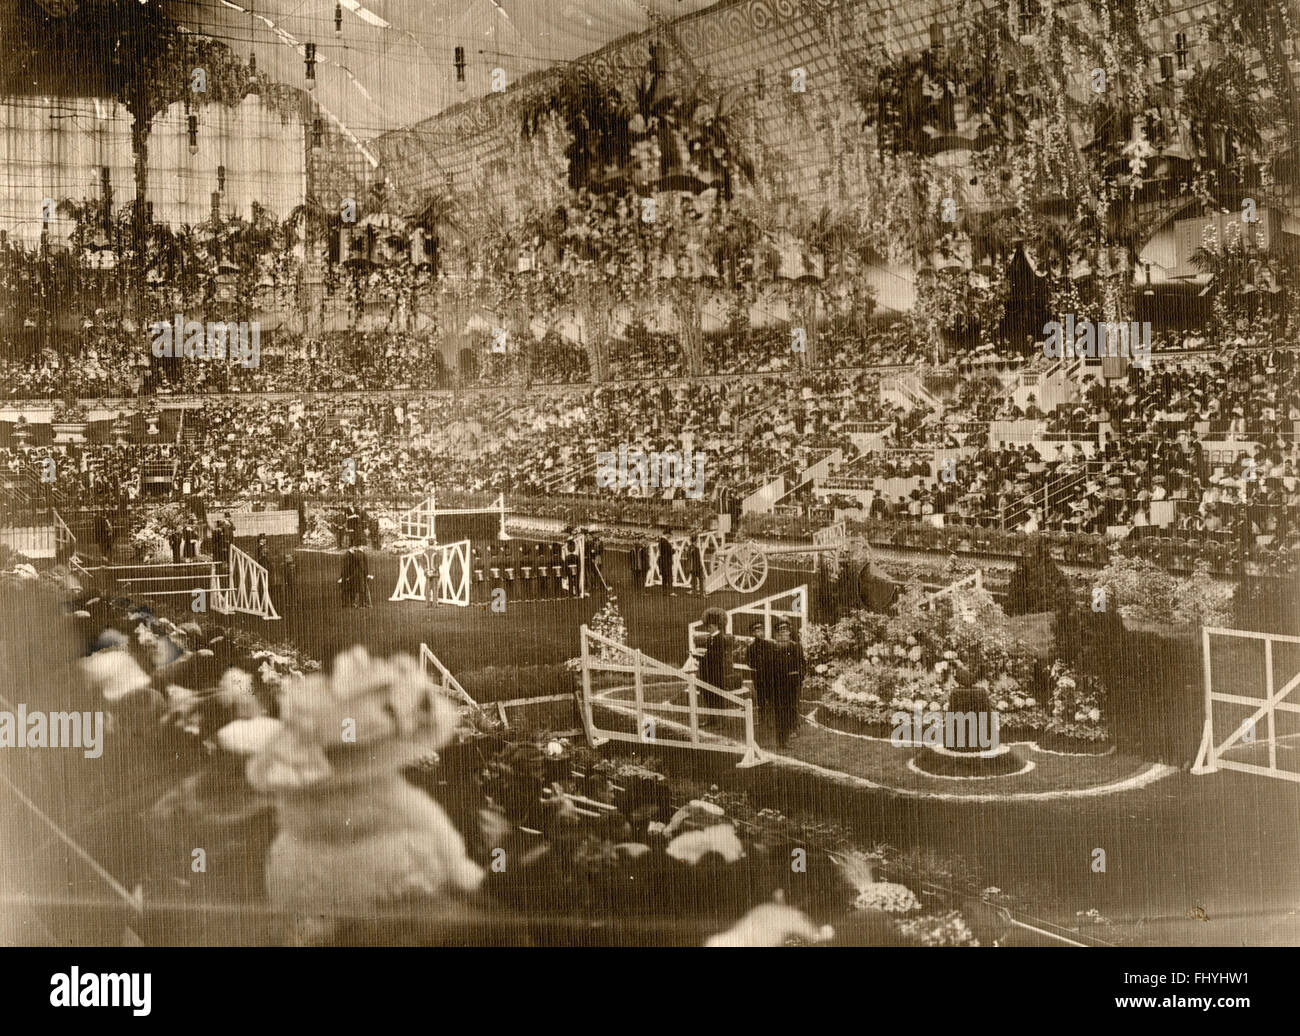 International Horse Show à l'Olympia, Londres, UK 1909 Banque D'Images